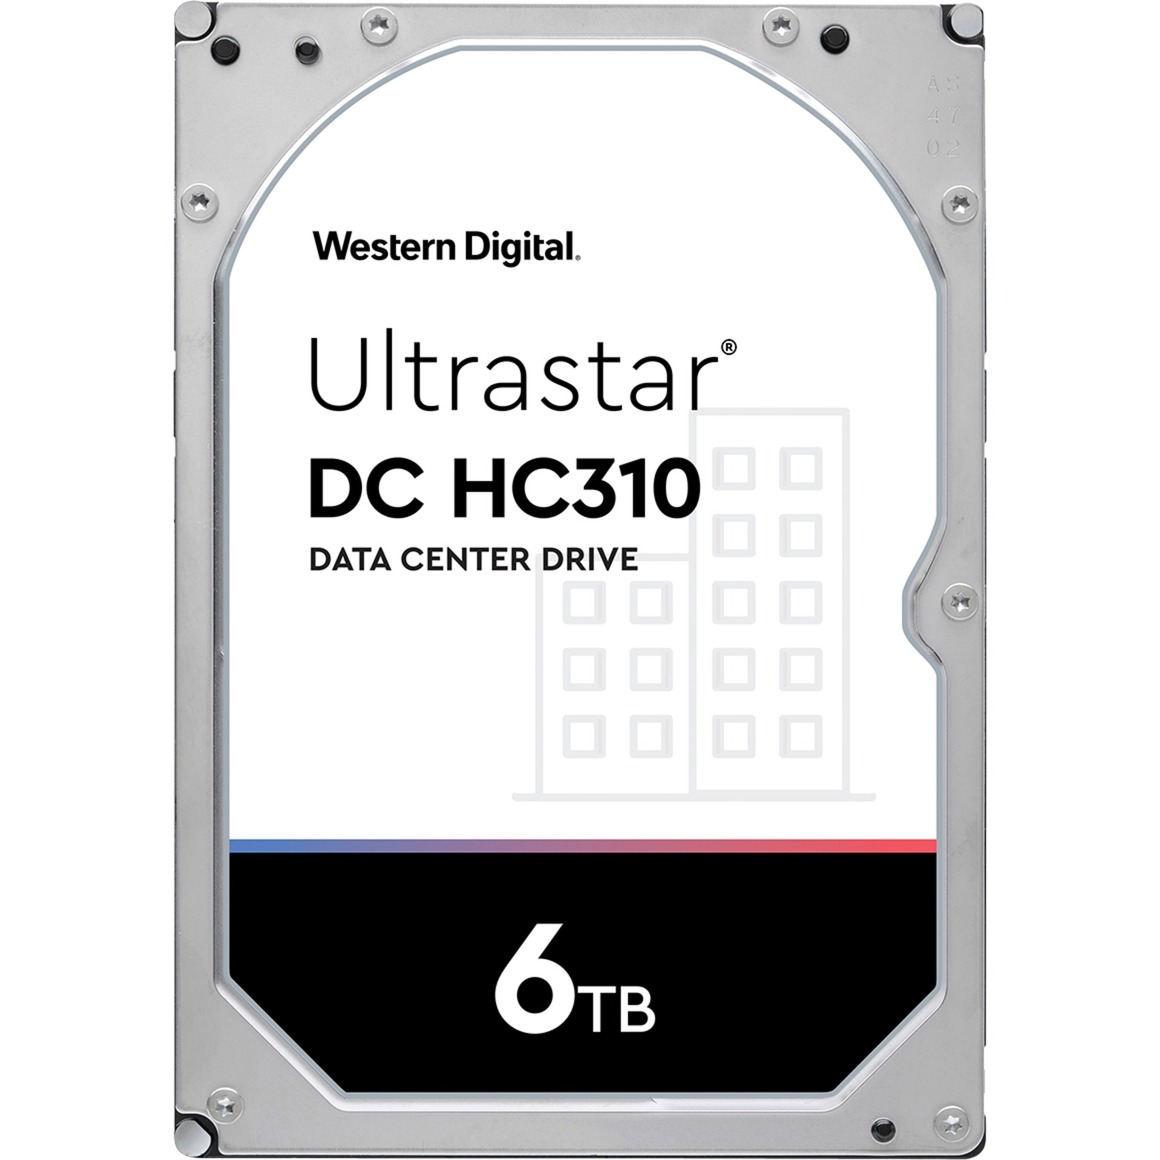 Ultrastar DC HC310 6 TB, Festplatte von WD